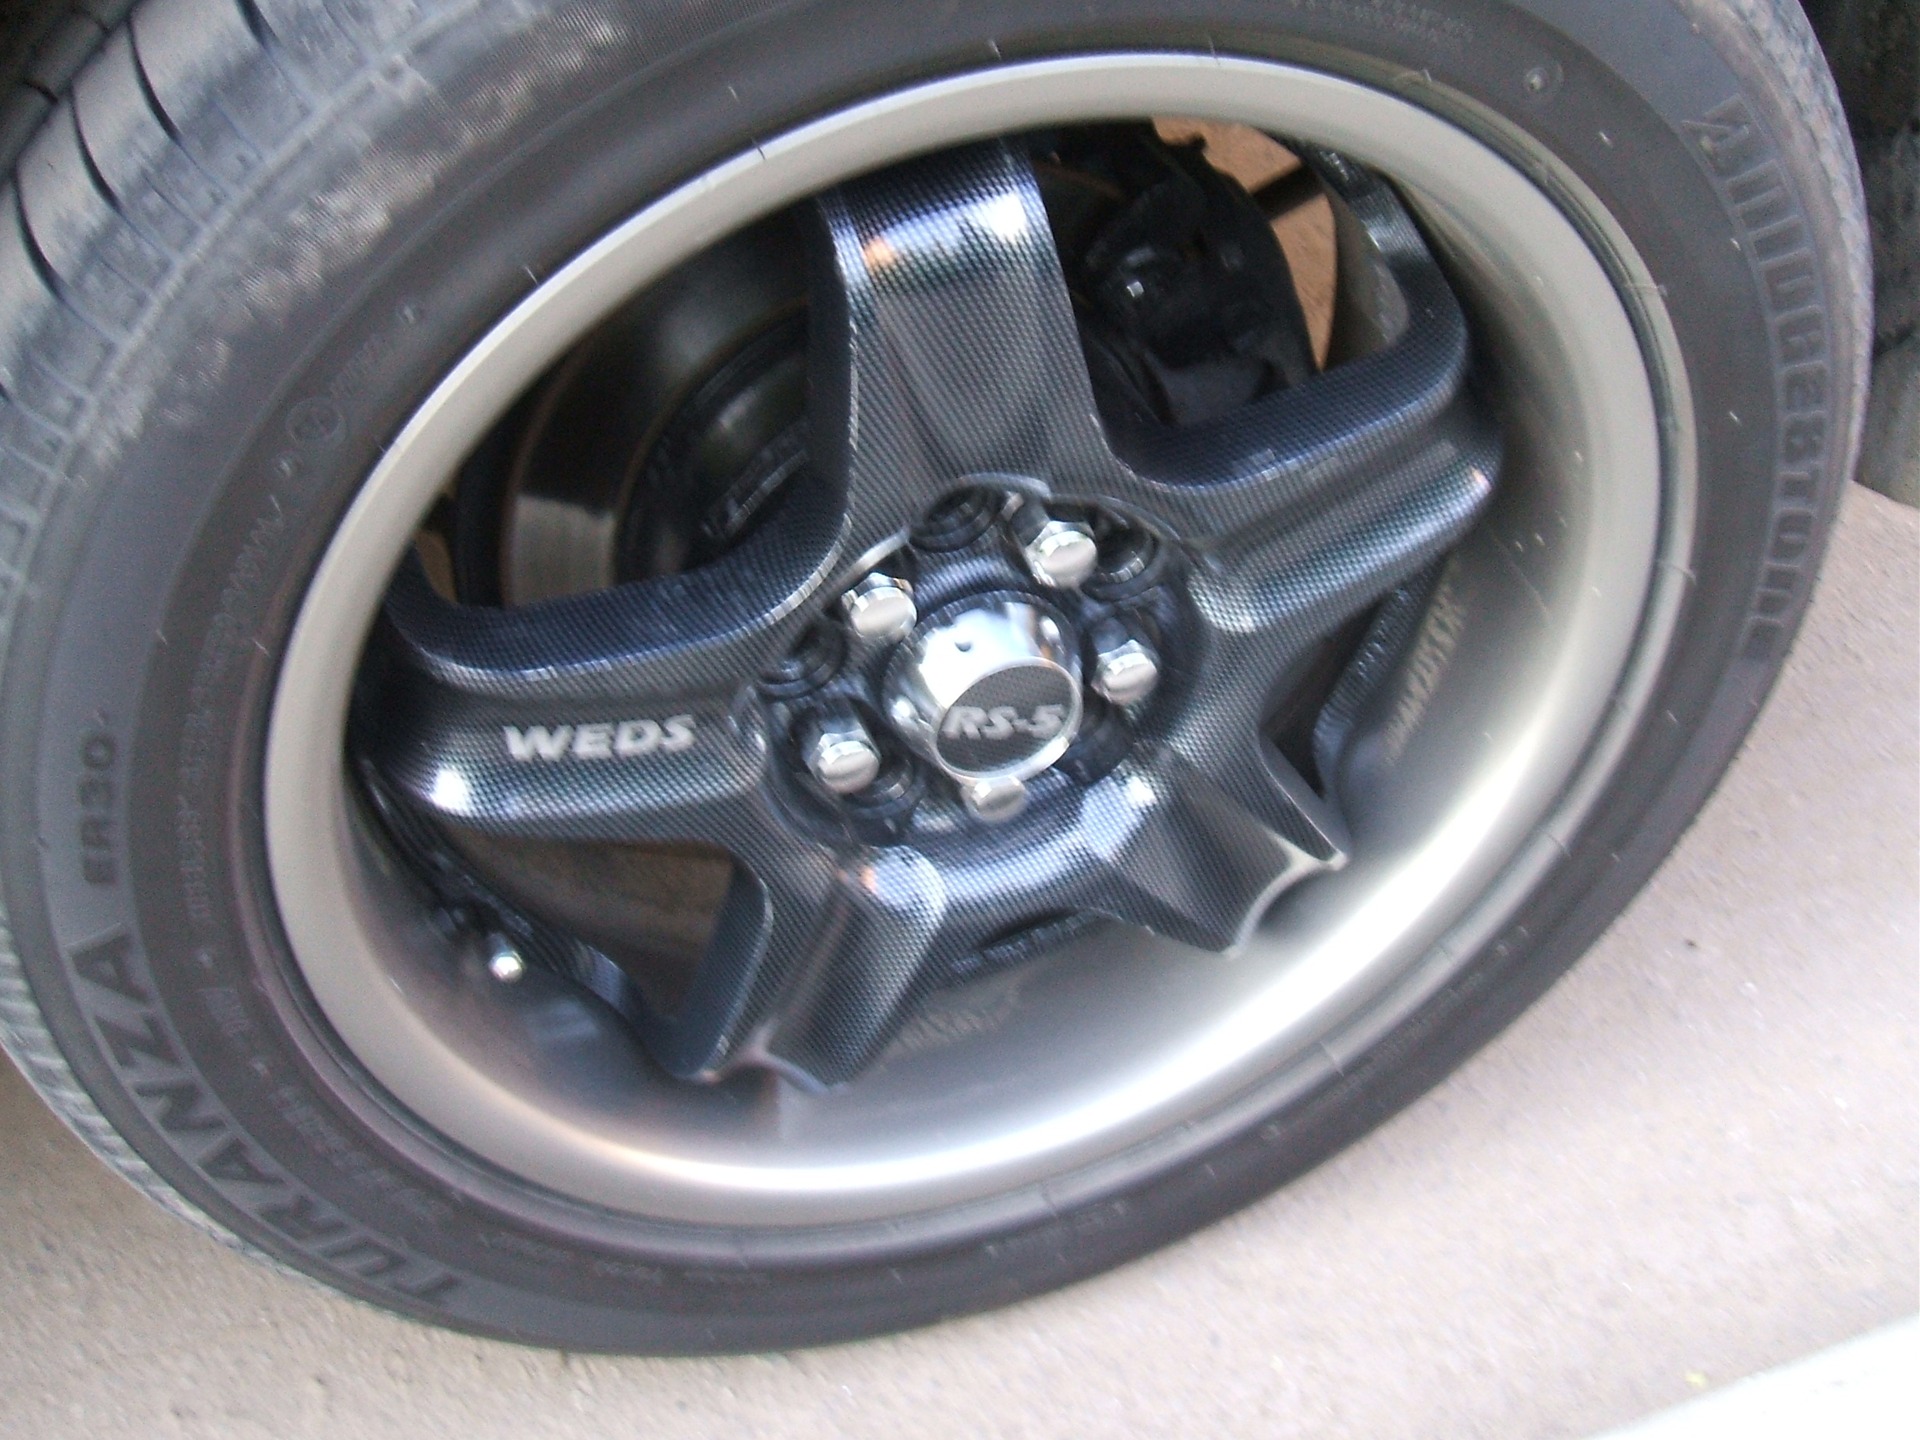  WEDS RS-5 2010 Toyota Caldina 20 1998 